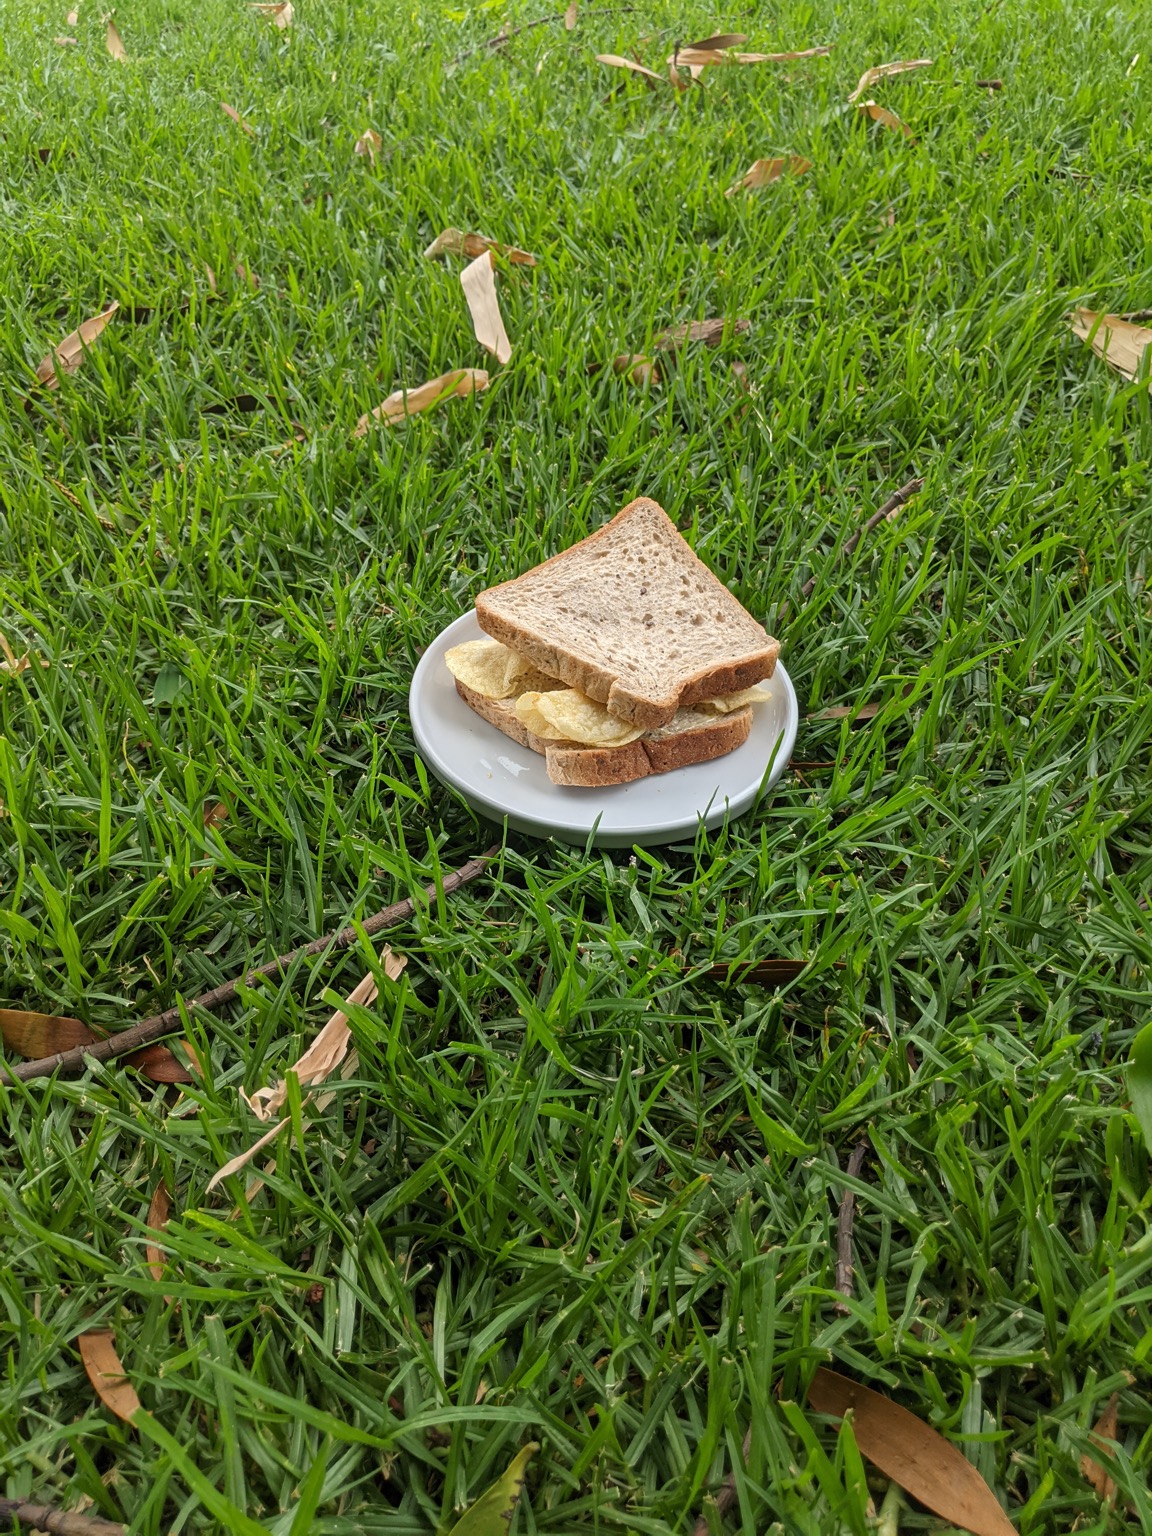 Potato crisp sandwich on a plate on grass